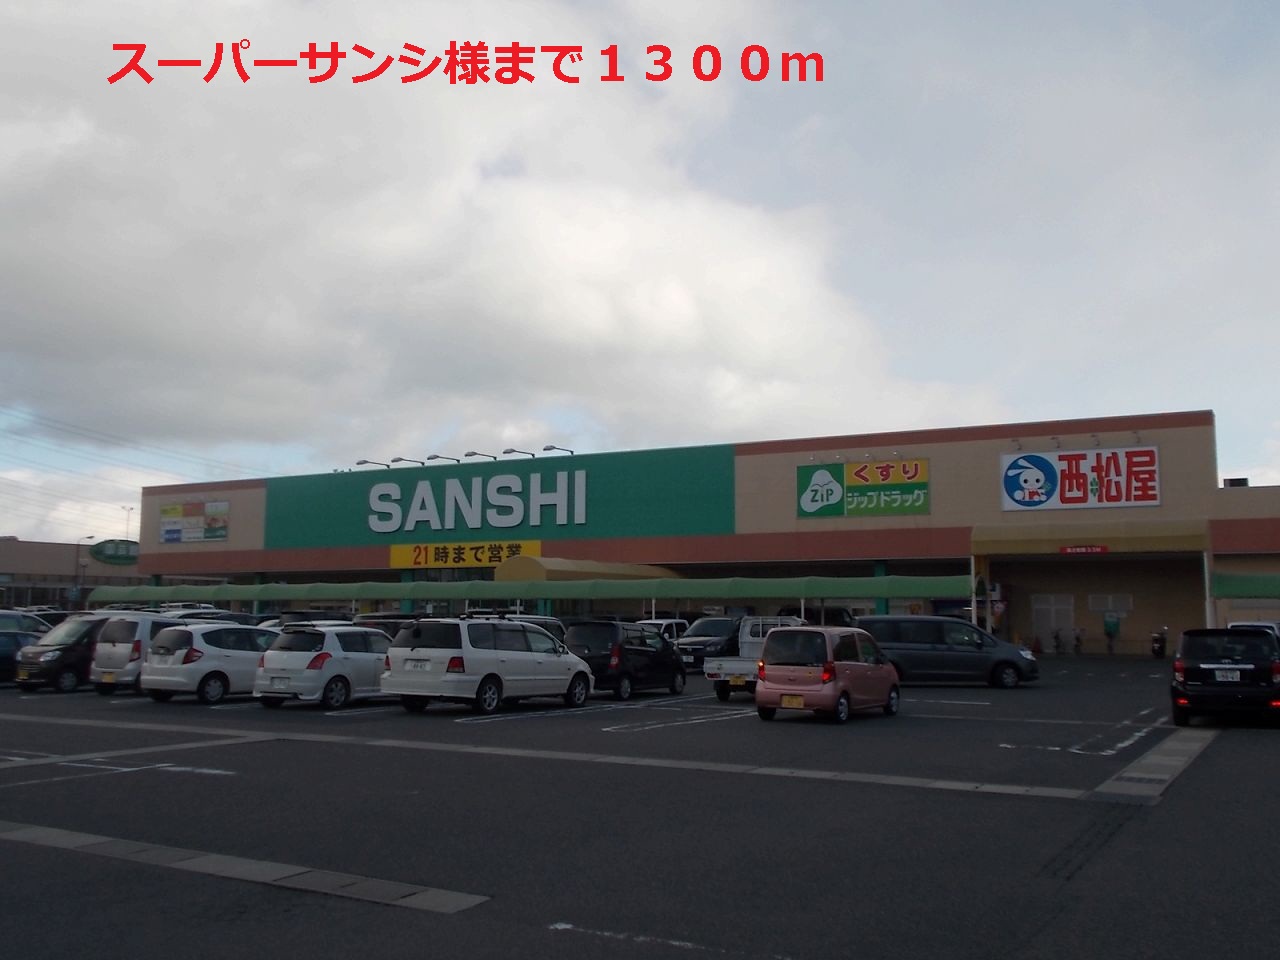 Supermarket. 1300m until Super Sansi (Super)